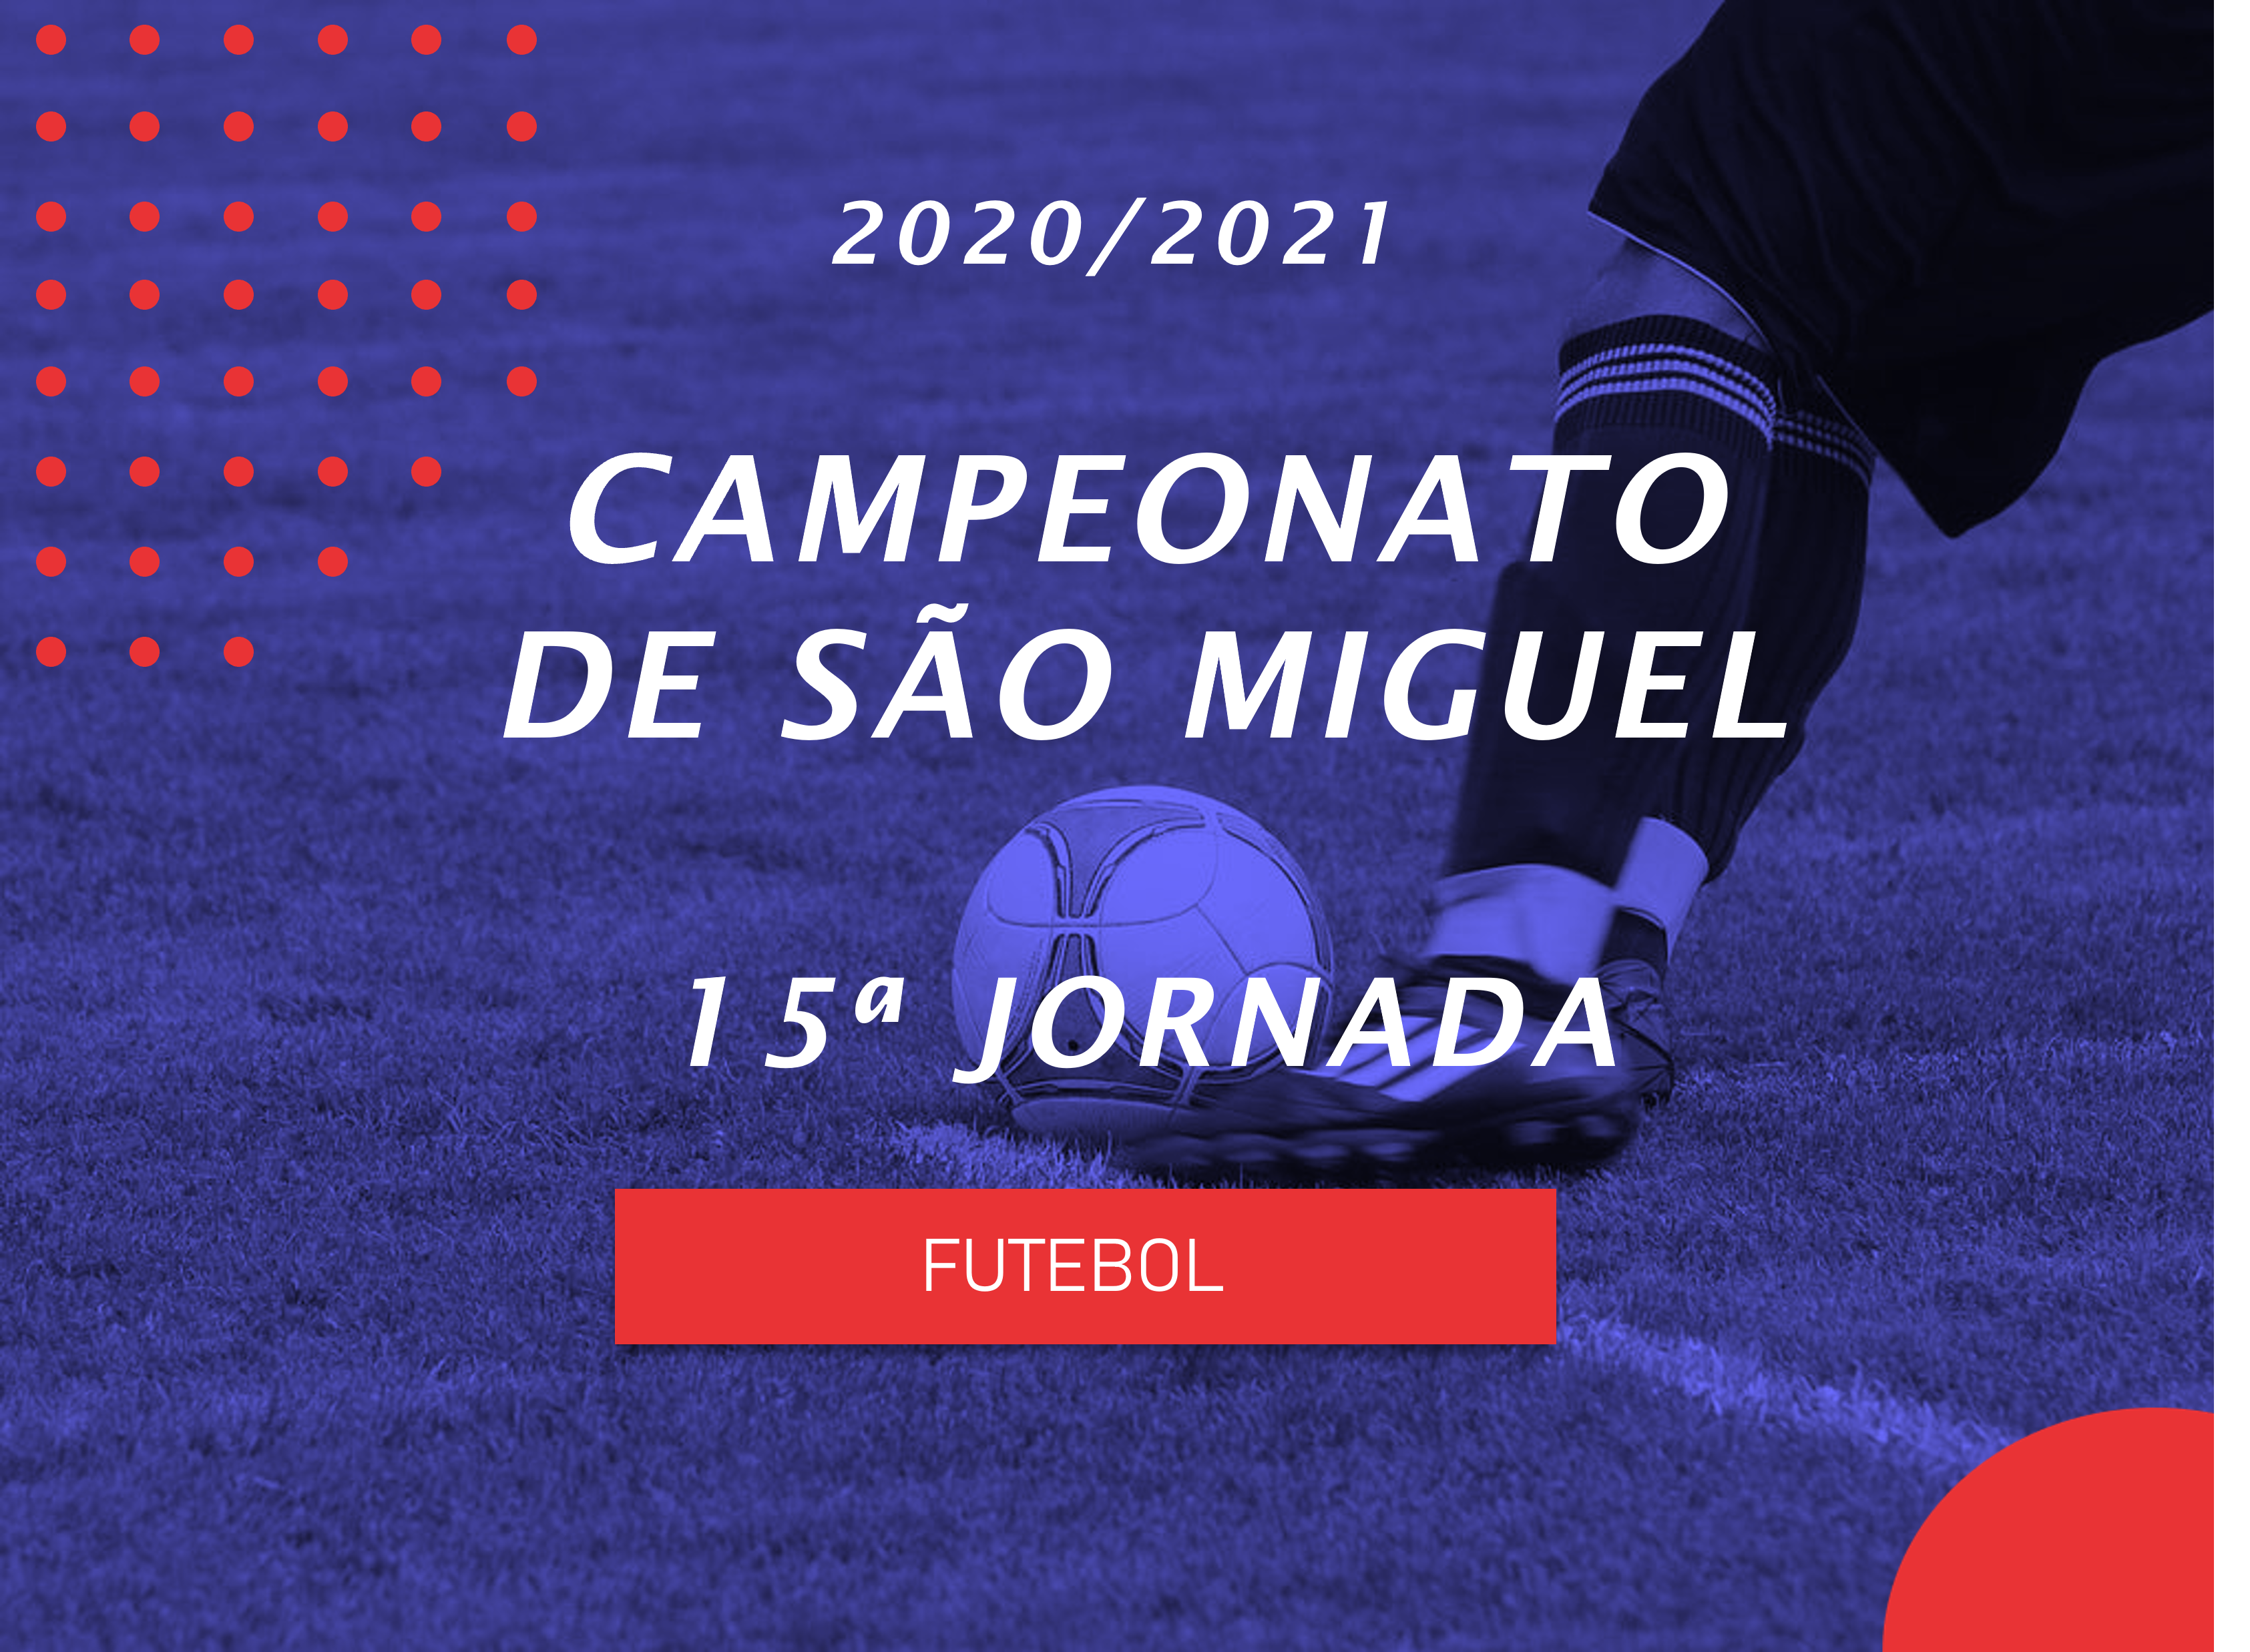 Campeonato de São Miguel - 15ª Jornada